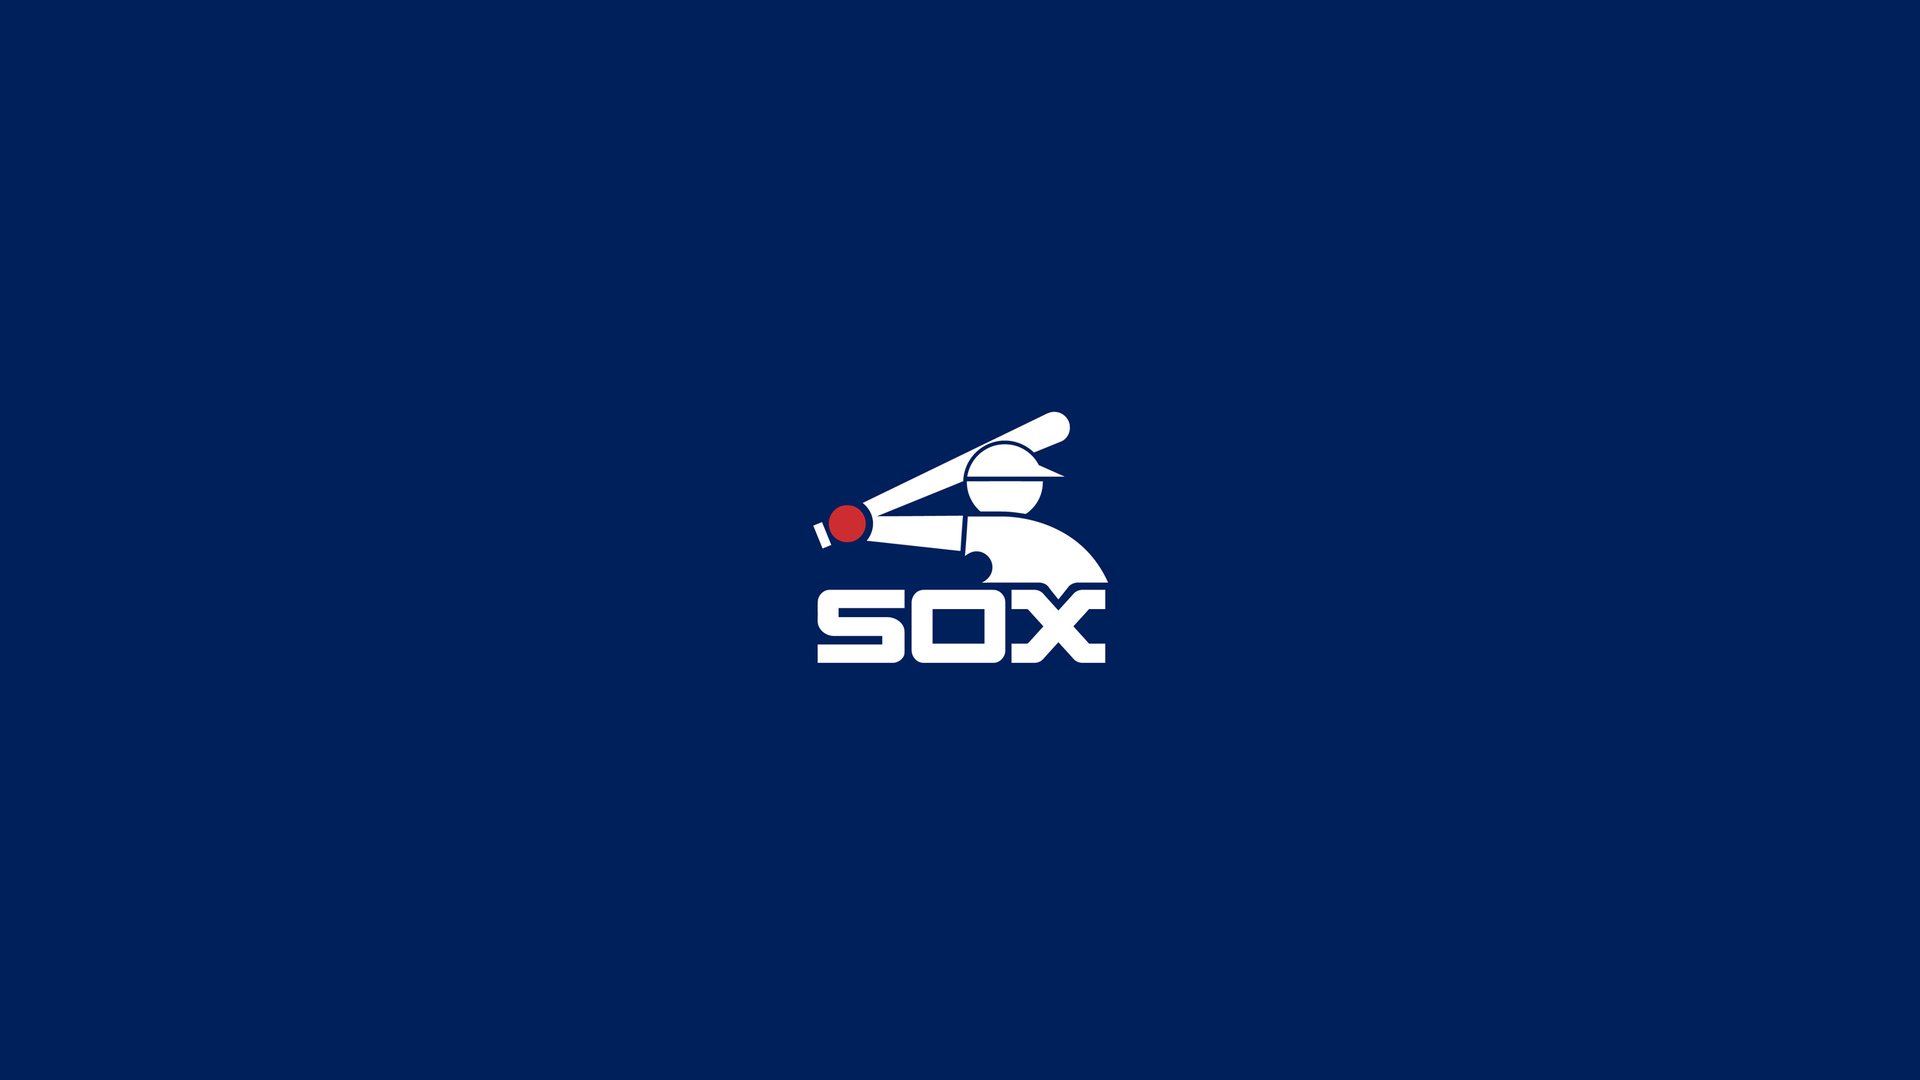 Chicago White Sox Desktop Wallpaper 33024 - Baltana